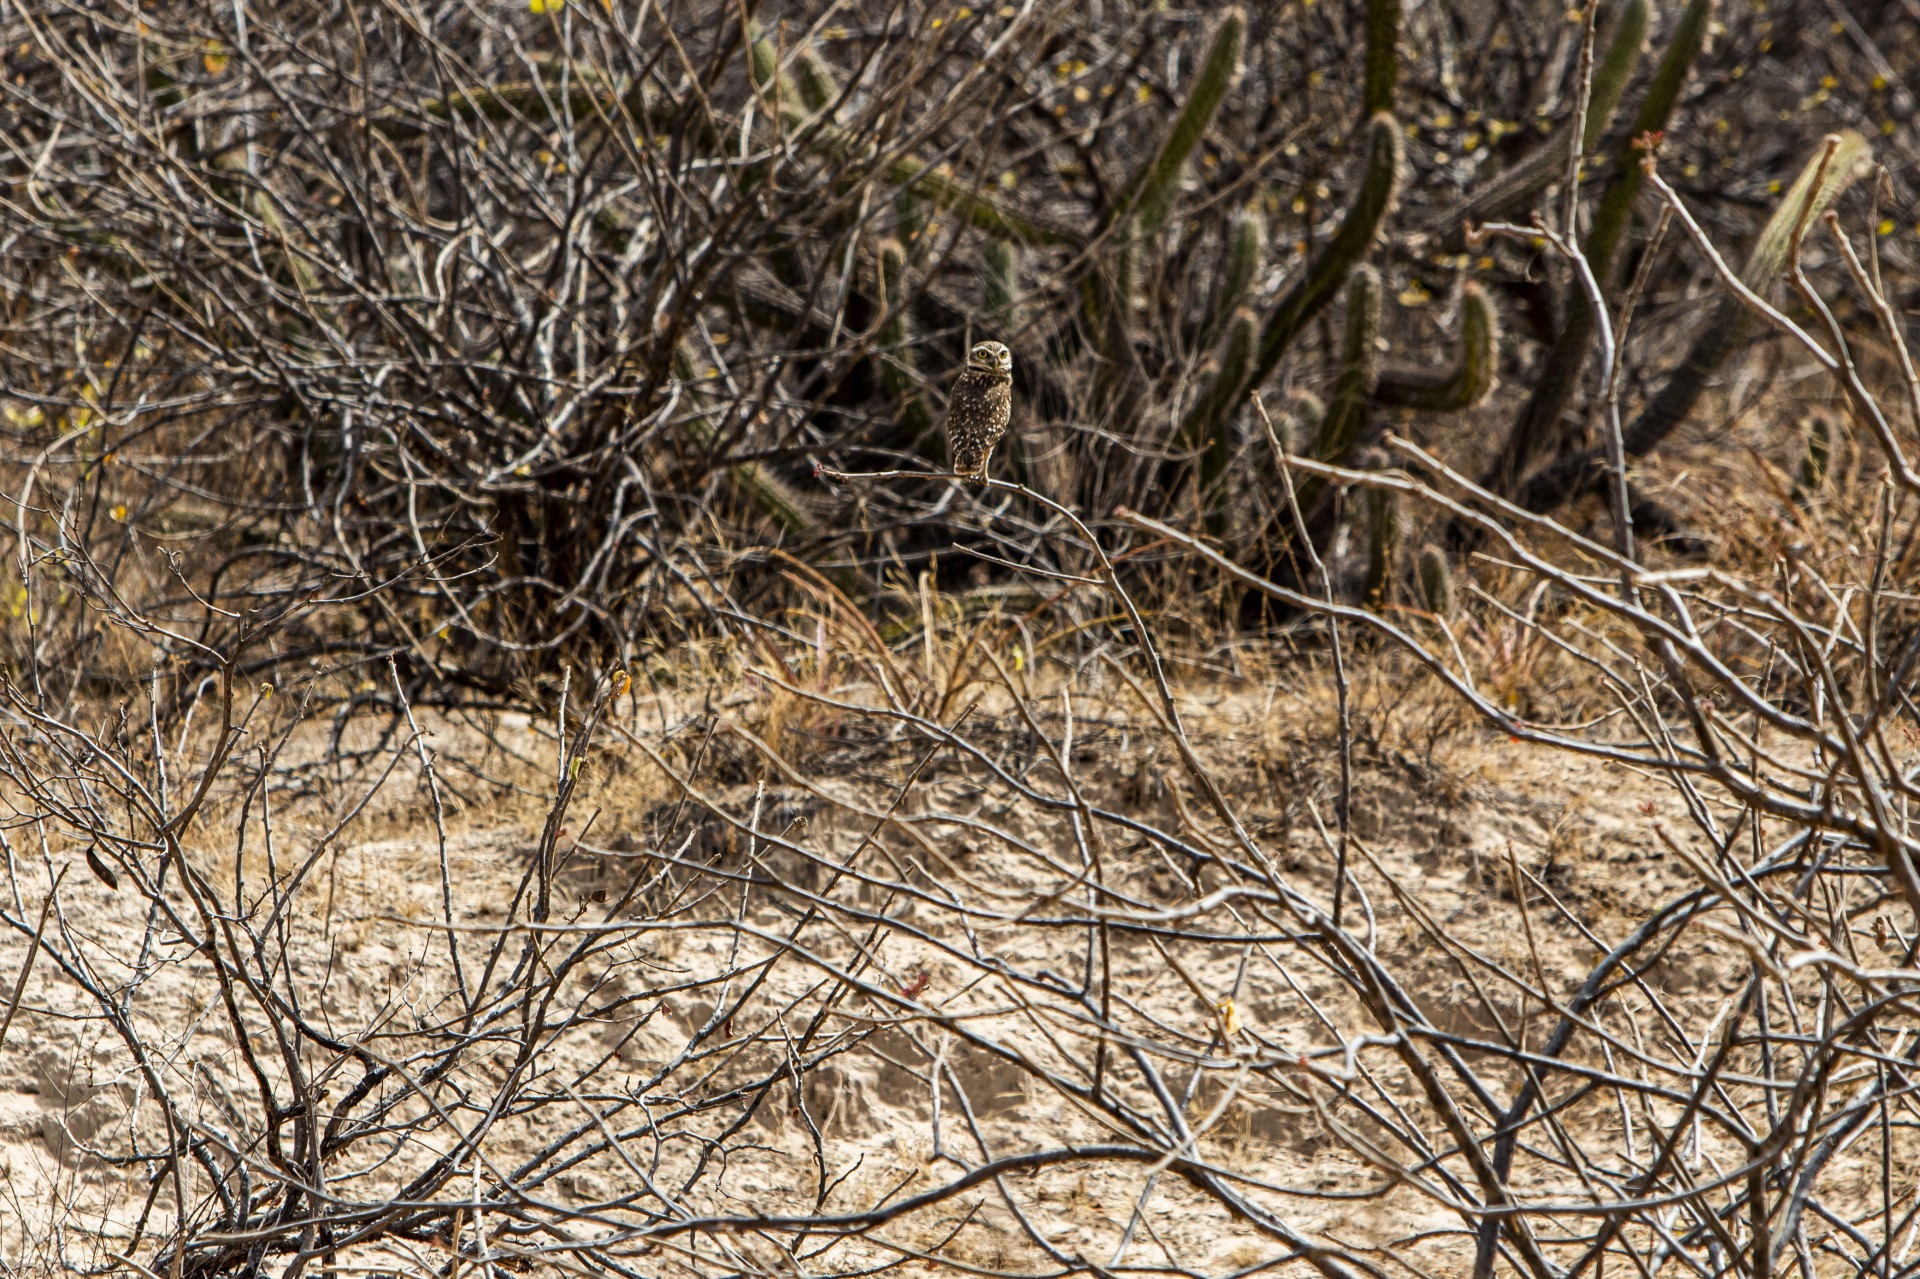 Desertificação no município de Poranaga: coruja na paisagem árida  (Fco Fontenele/O POVO) (Foto: FCO FONTENELE)